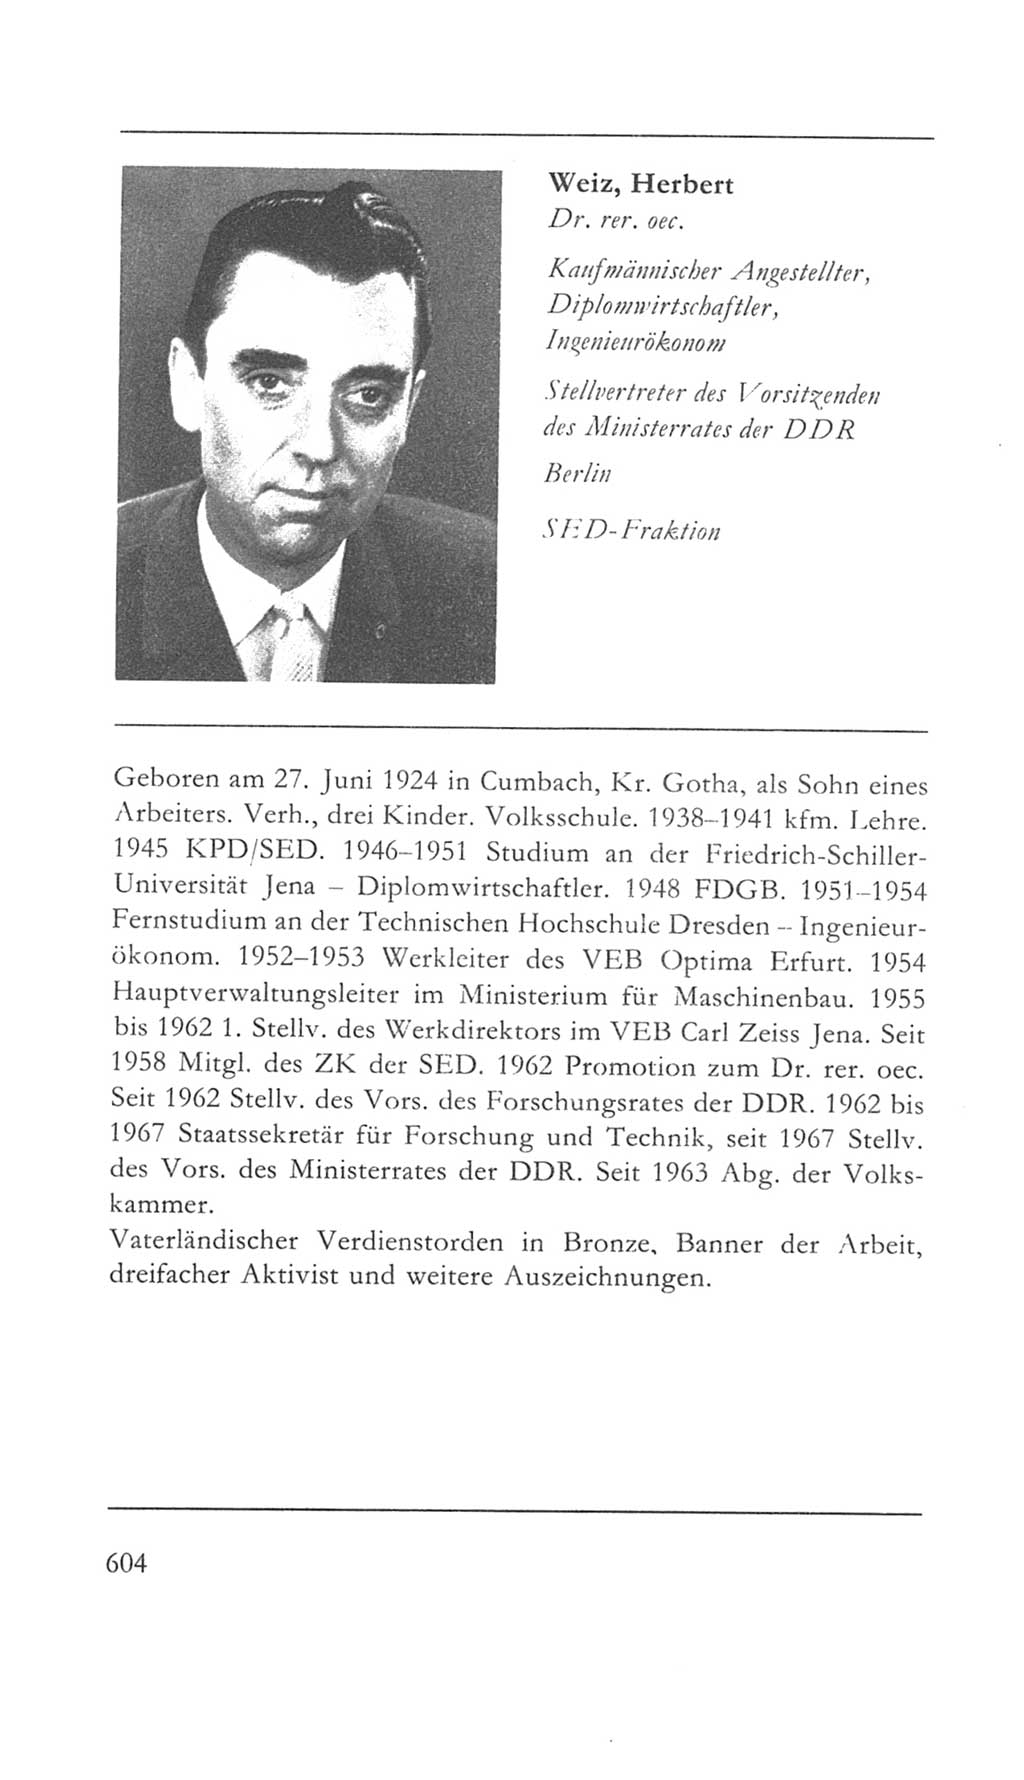 Volkskammer (VK) der Deutschen Demokratischen Republik (DDR) 5. Wahlperiode 1967-1971, Seite 604 (VK. DDR 5. WP. 1967-1971, S. 604)